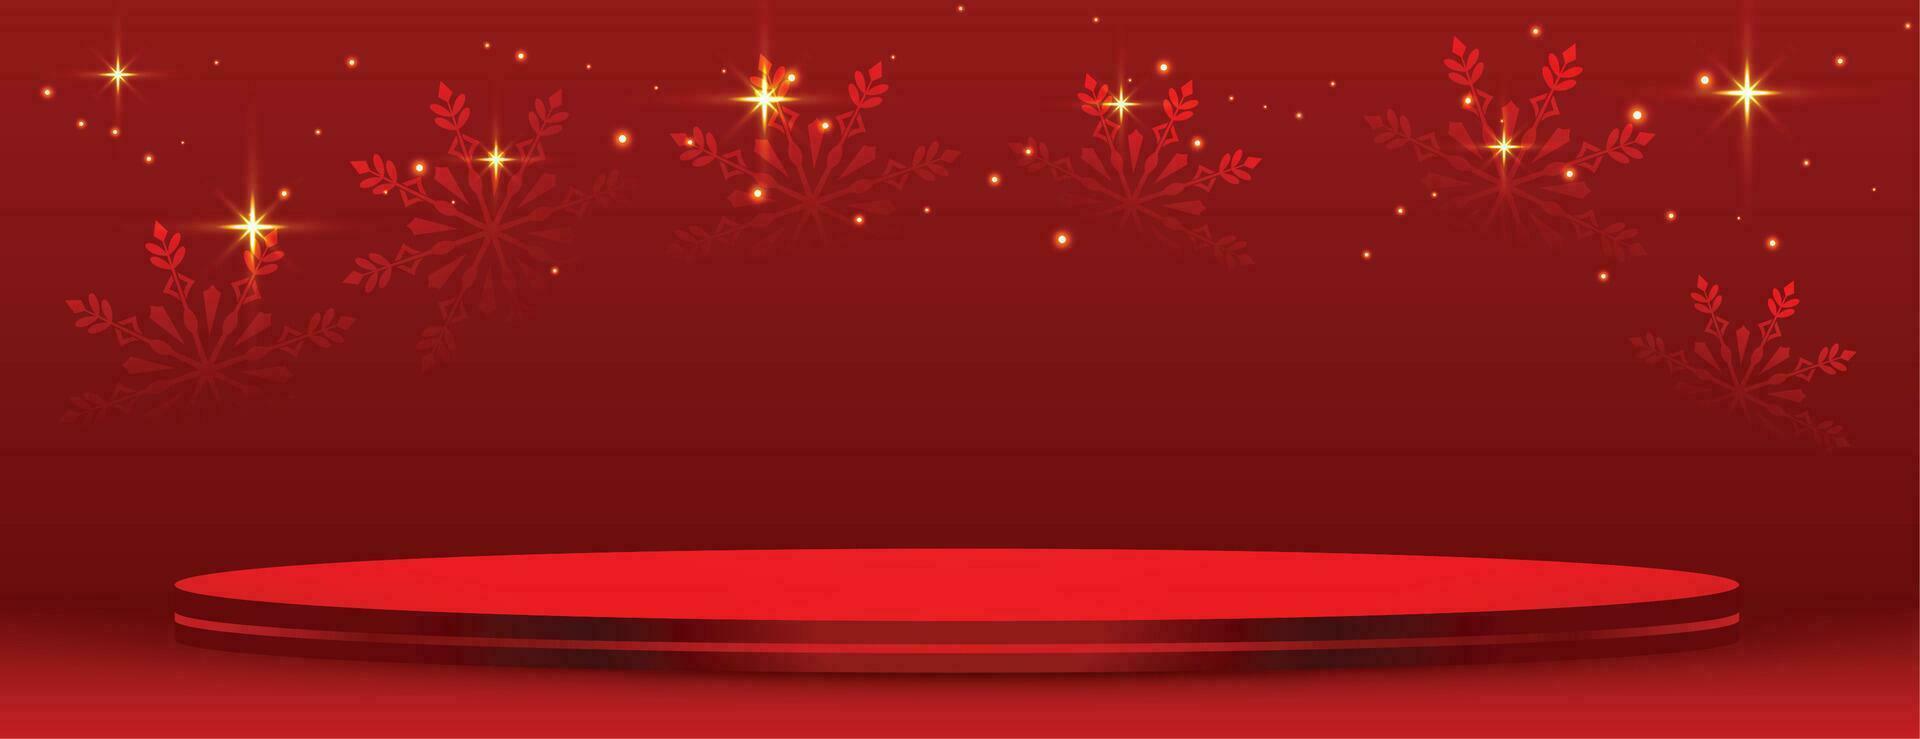 3d podio plataforma en rojo bandera para alegre Navidad festival vector